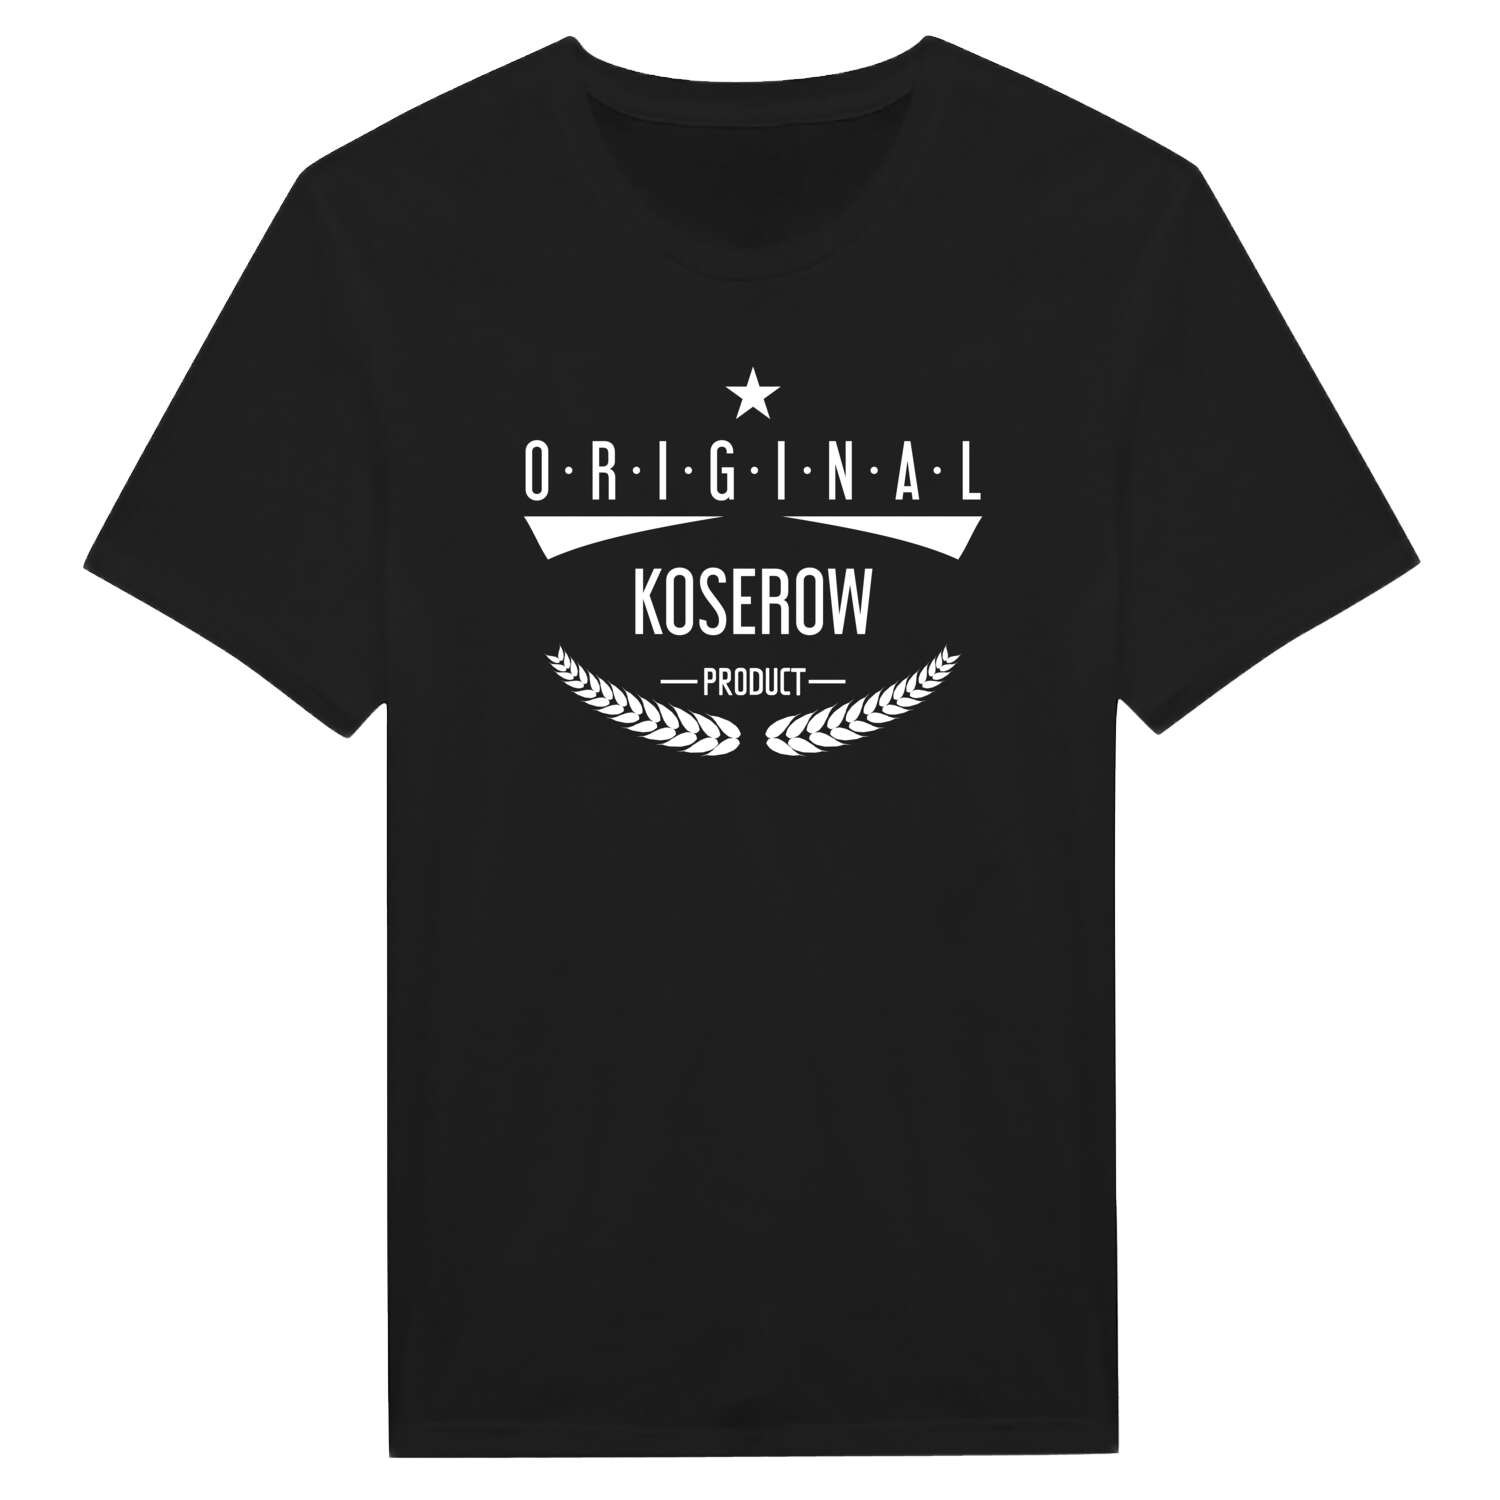 Koserow T-Shirt »Original Product«